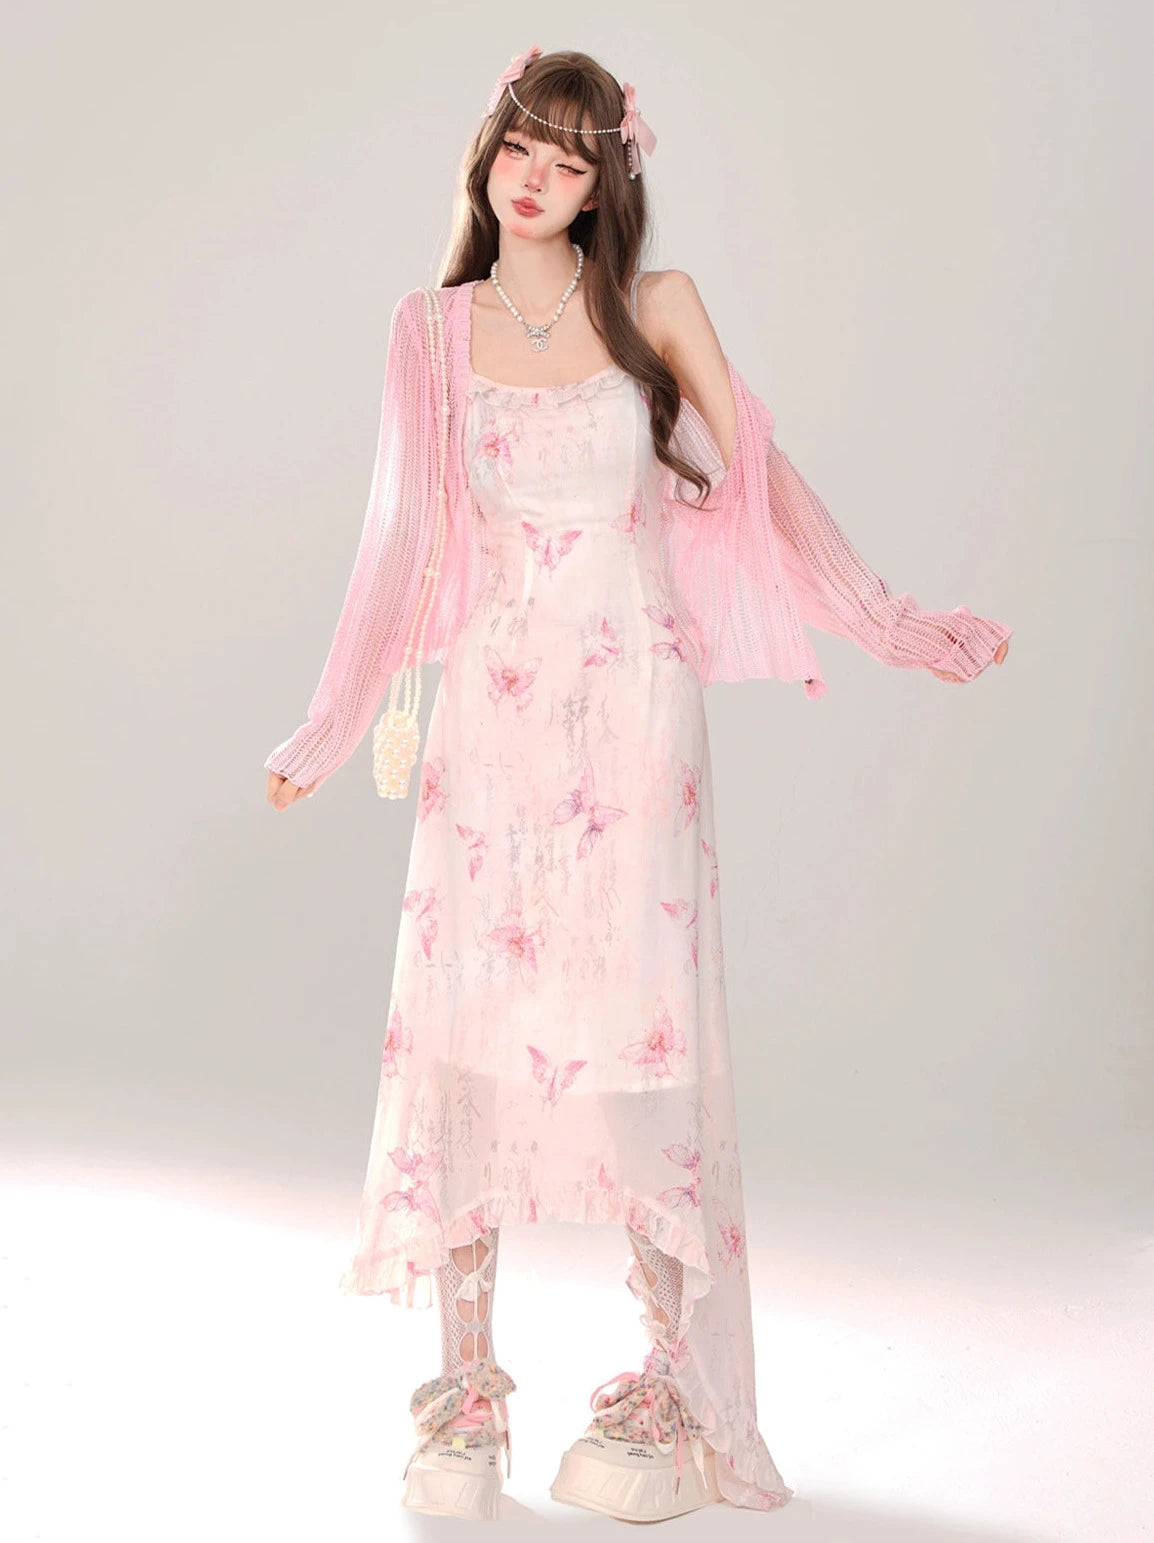 Sheer Pink Knit Cardigan + Dream Fan Butterfly Suspended Dress